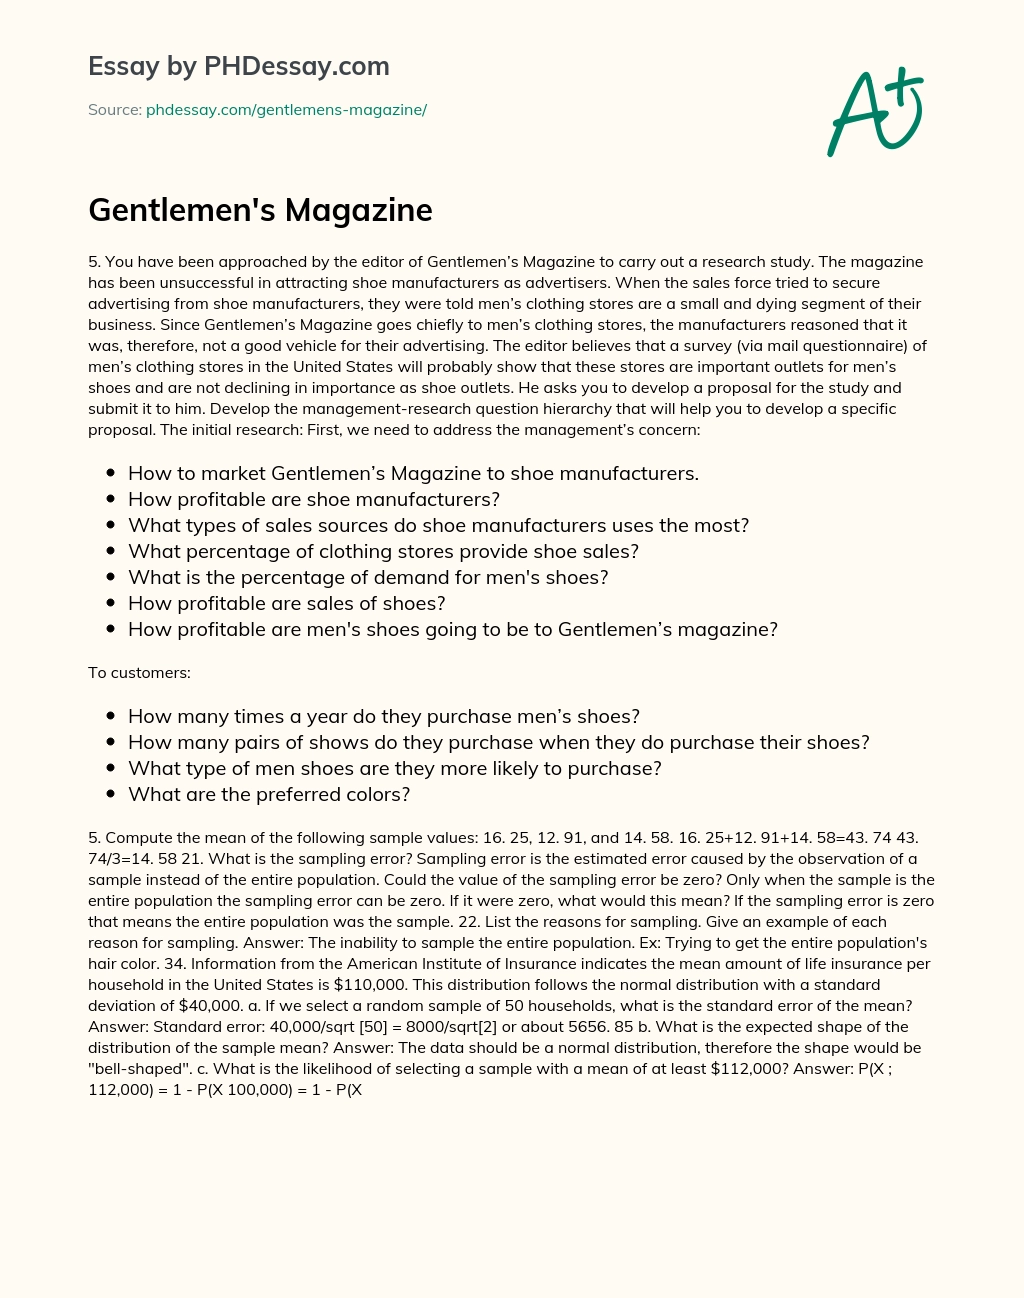 Gentlemen’s Magazine essay